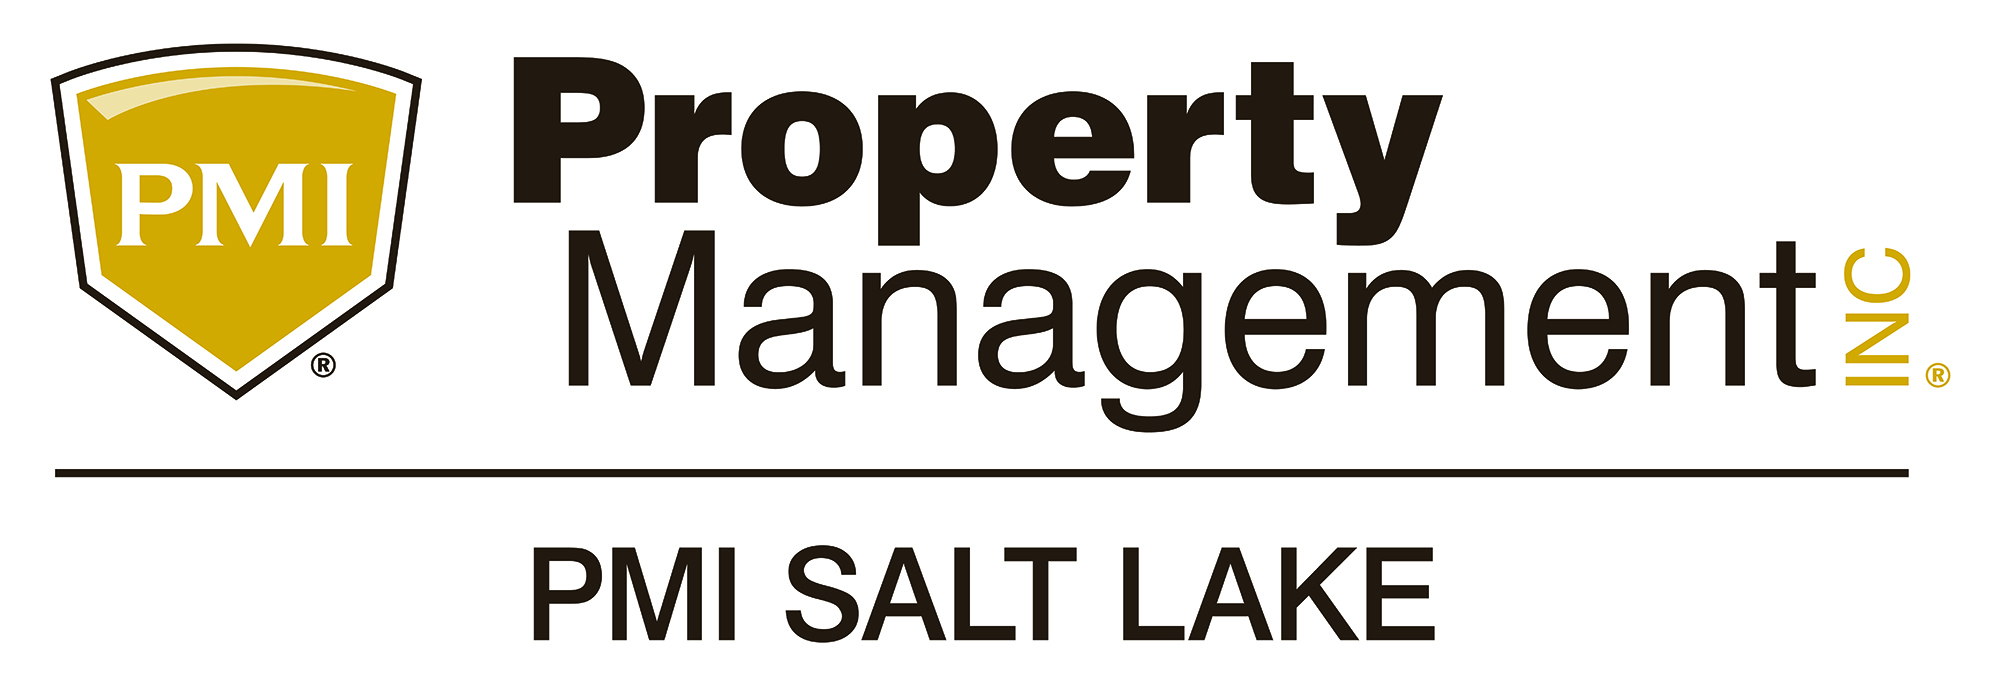 PMI Salt Lake logo